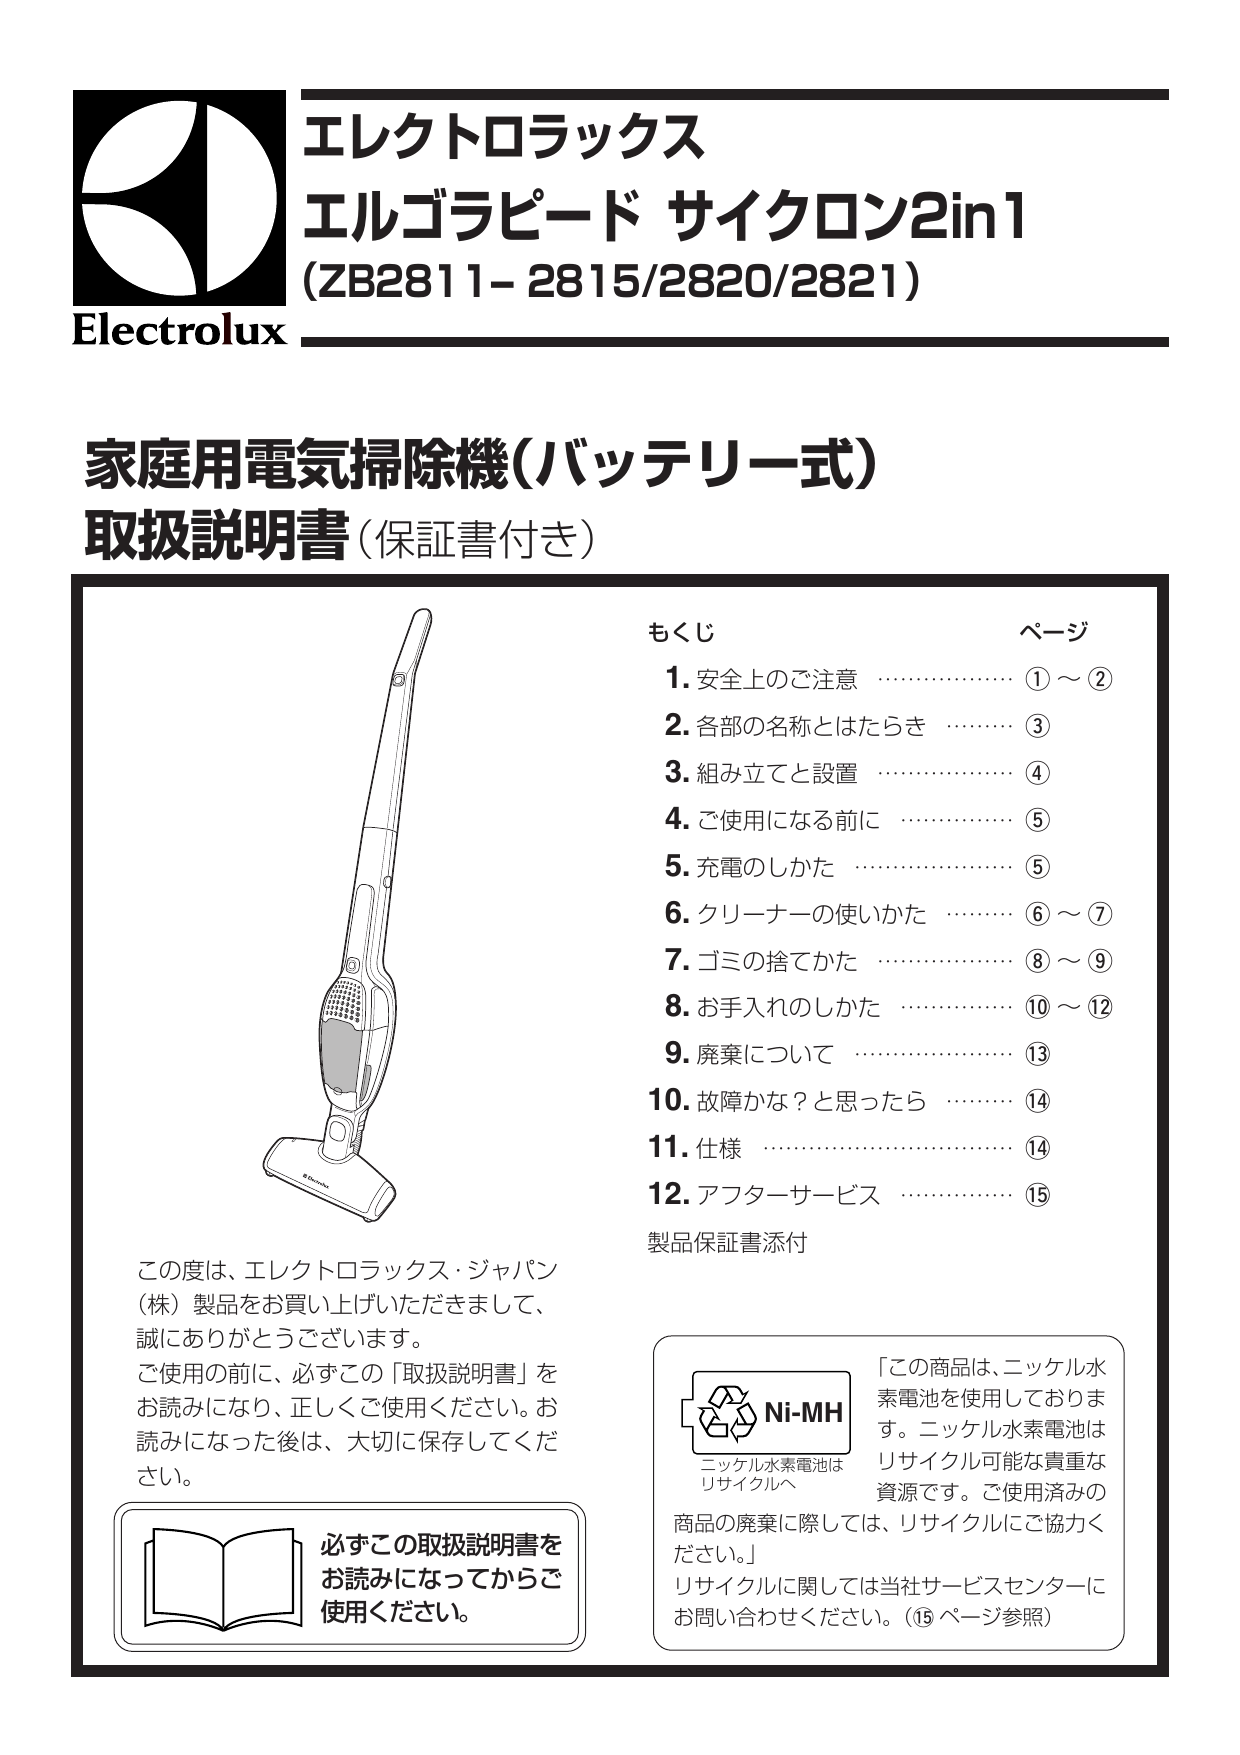 Electrolux Zb2815 ユーザーマニュアル Manualzz